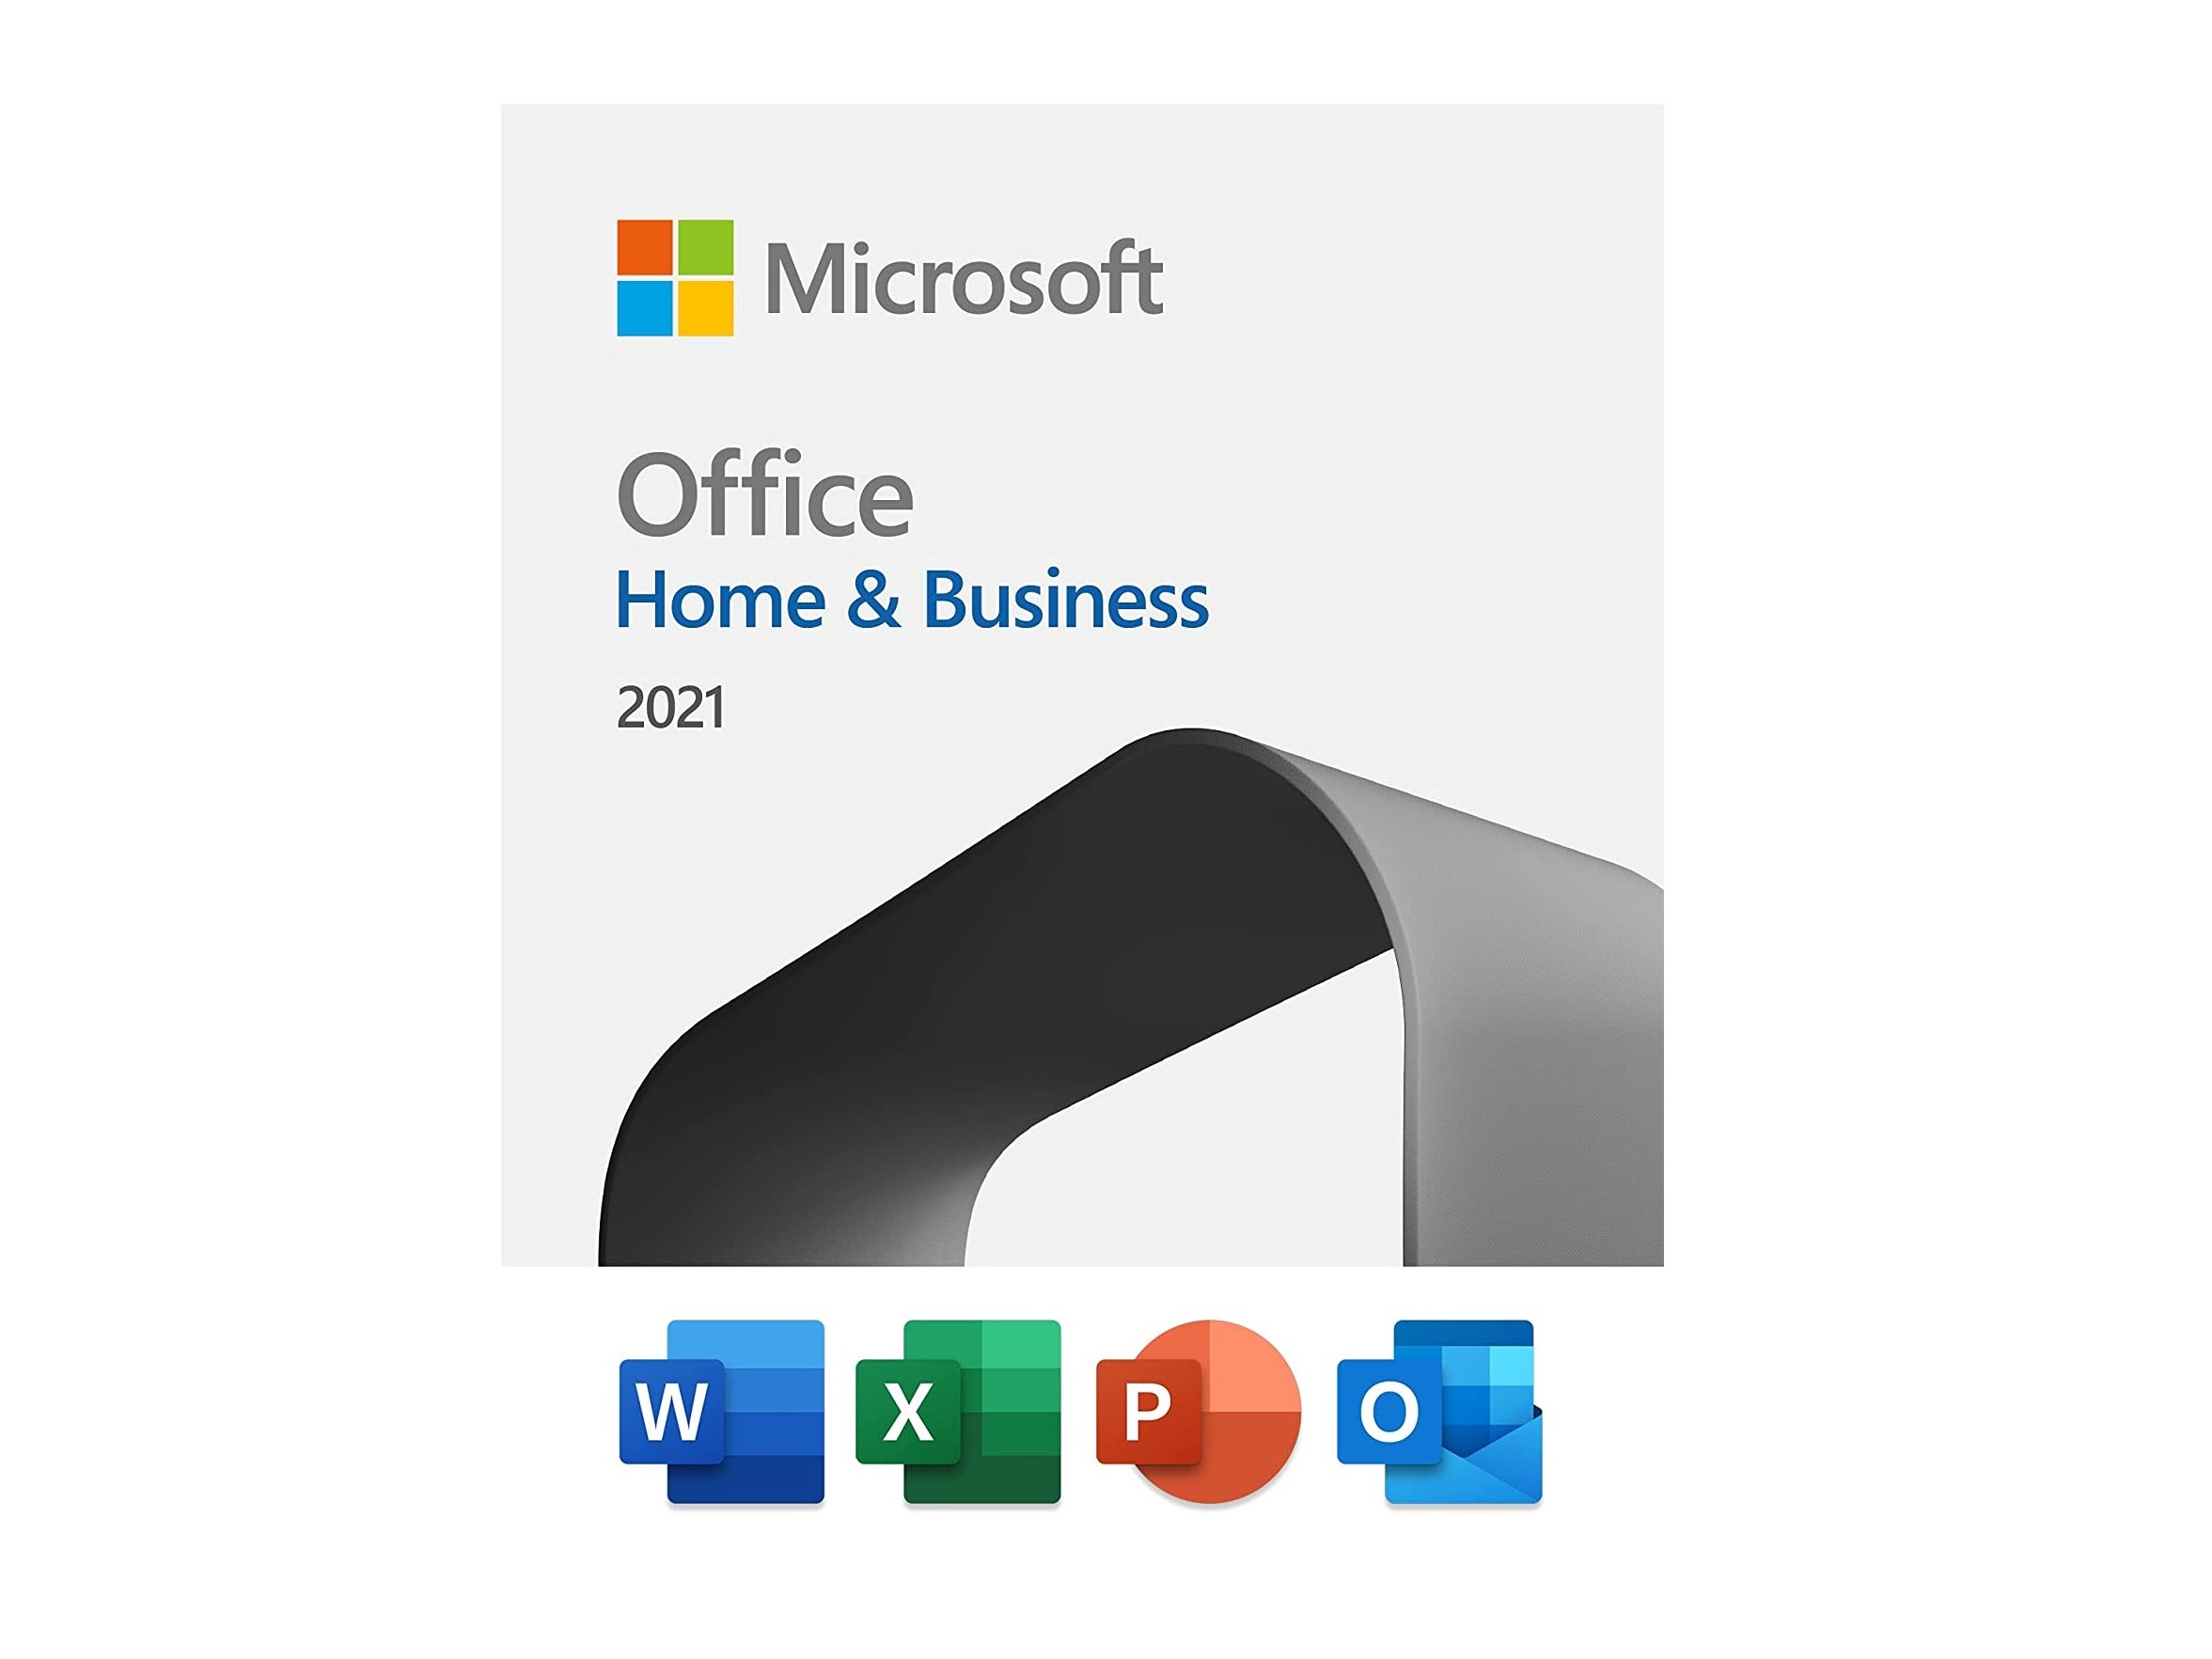 Imagem da capa da licença local do Microsoft Office Home & Business 2021.